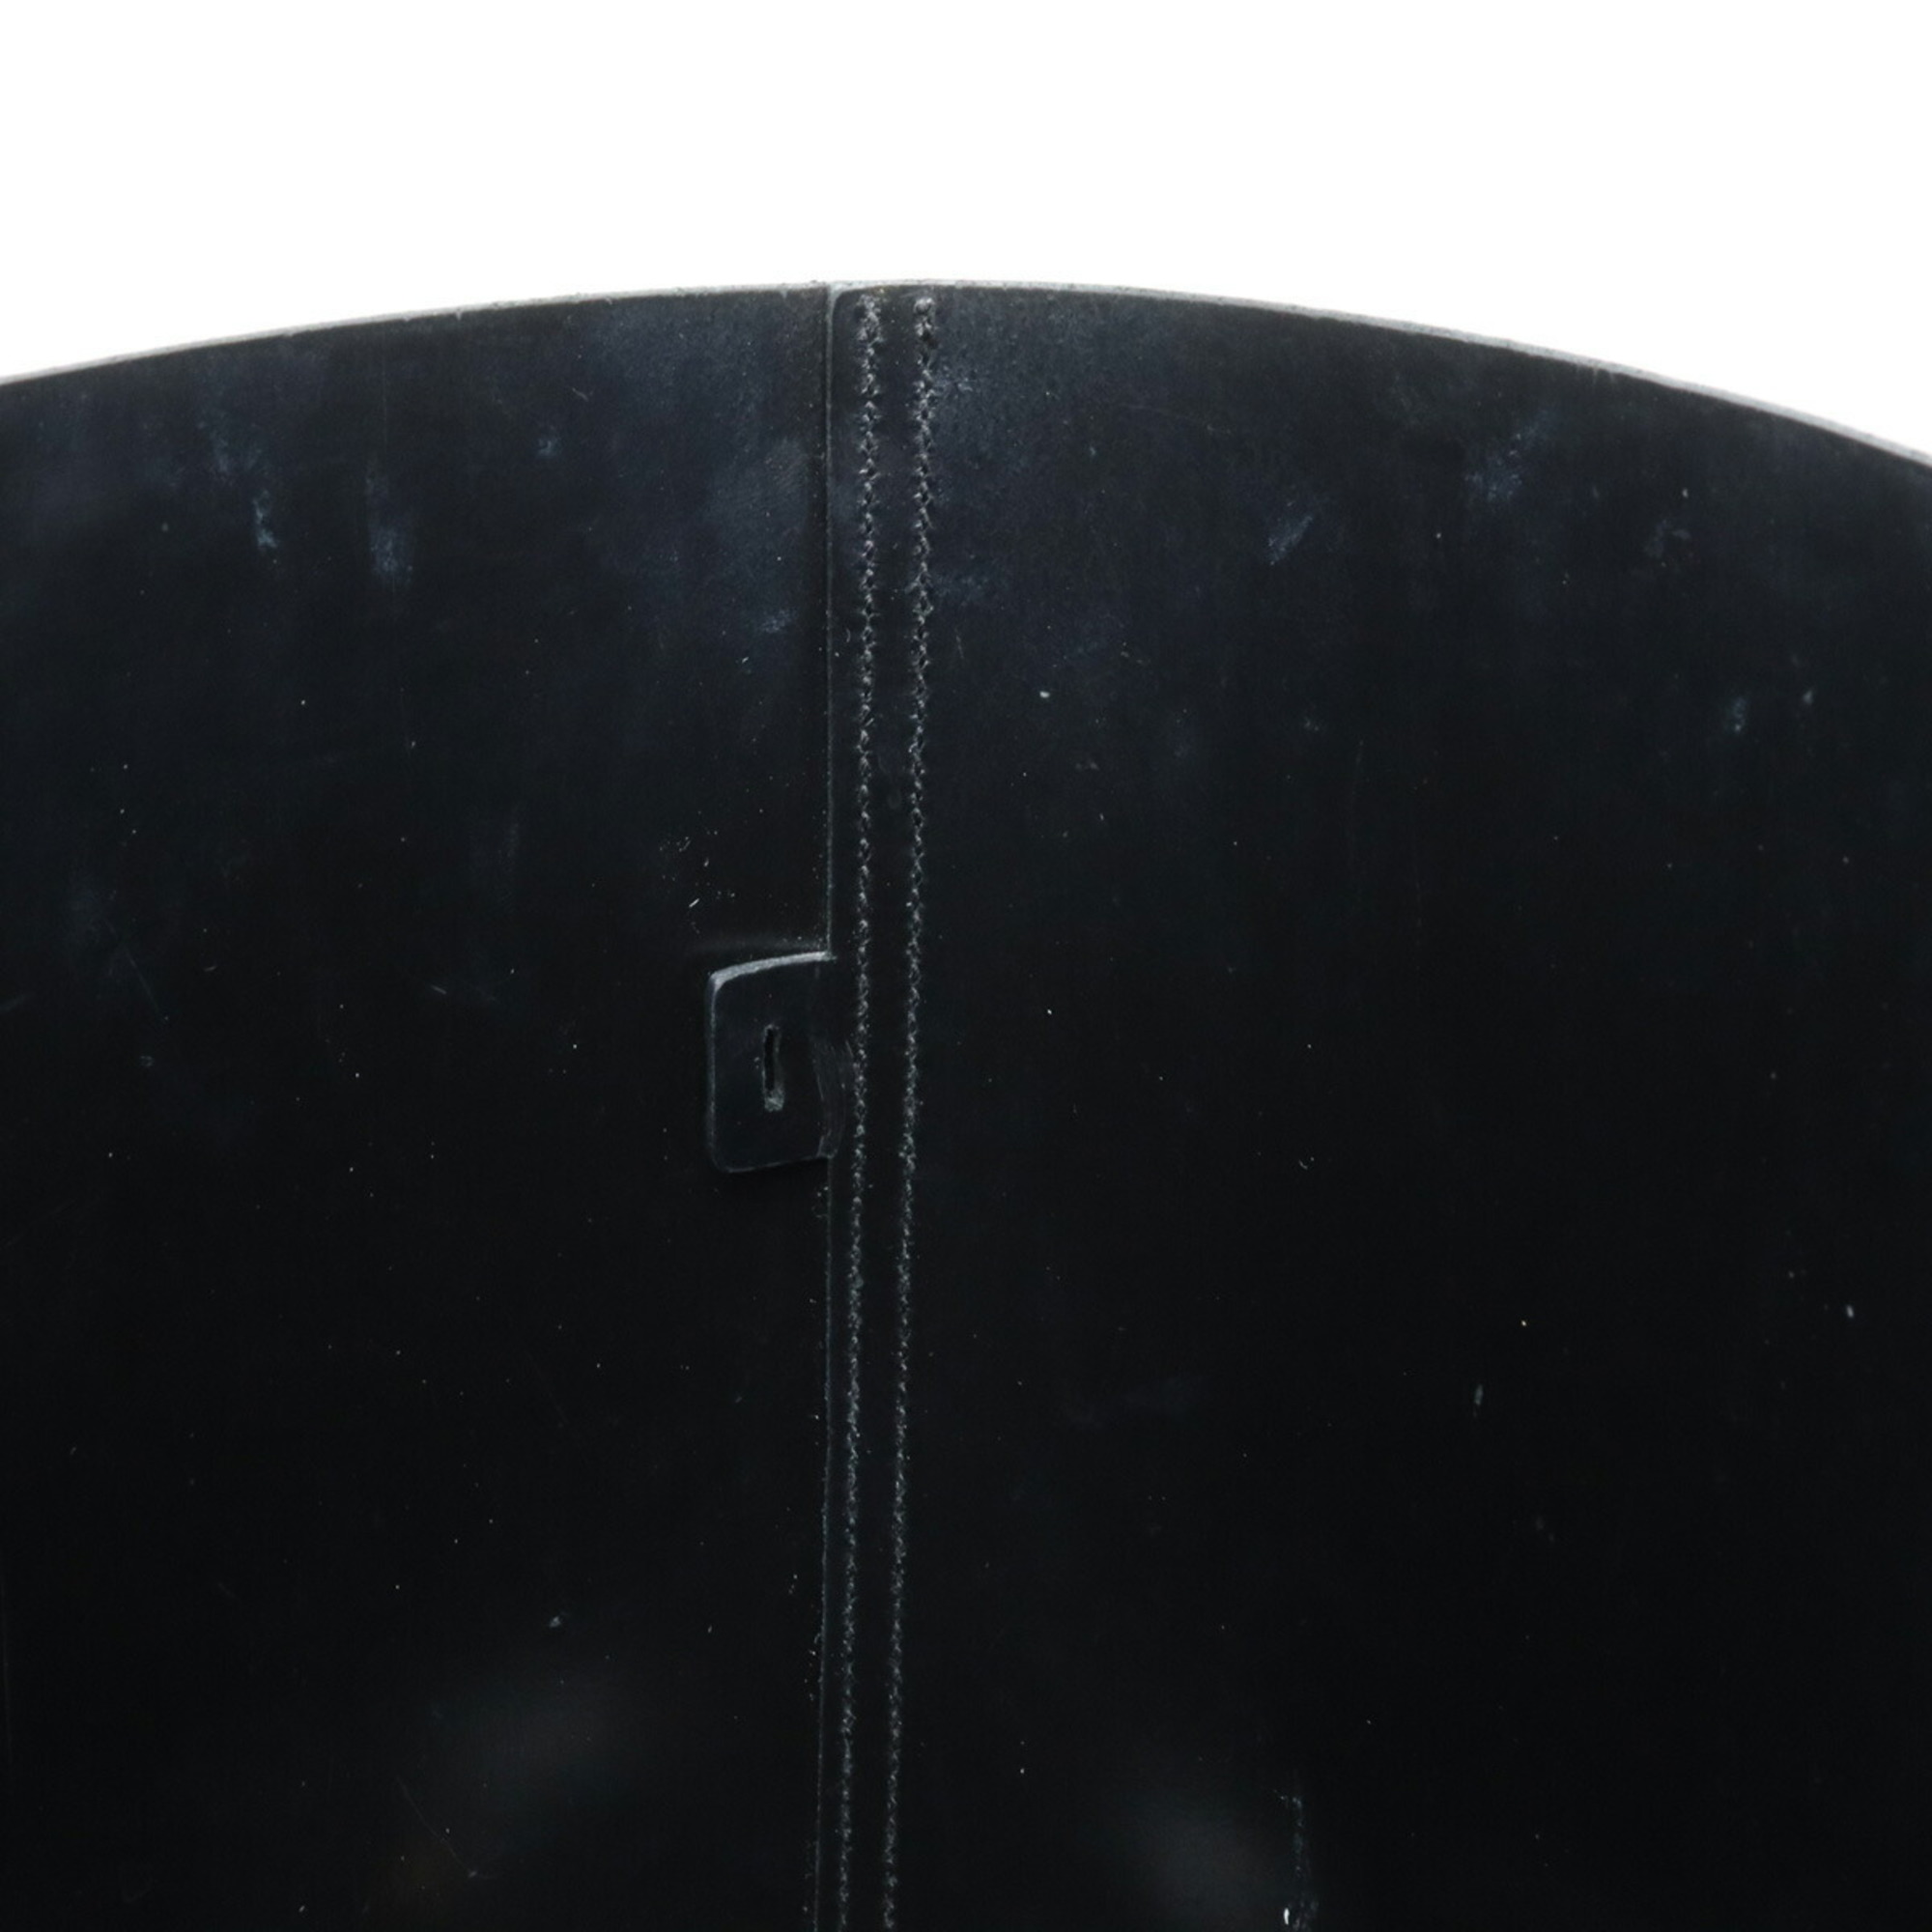 SAINT LAURENT PARIS YSL Yves Saint Laurent Tote Bag Shoulder Leather Black Pouch Not Included 383357